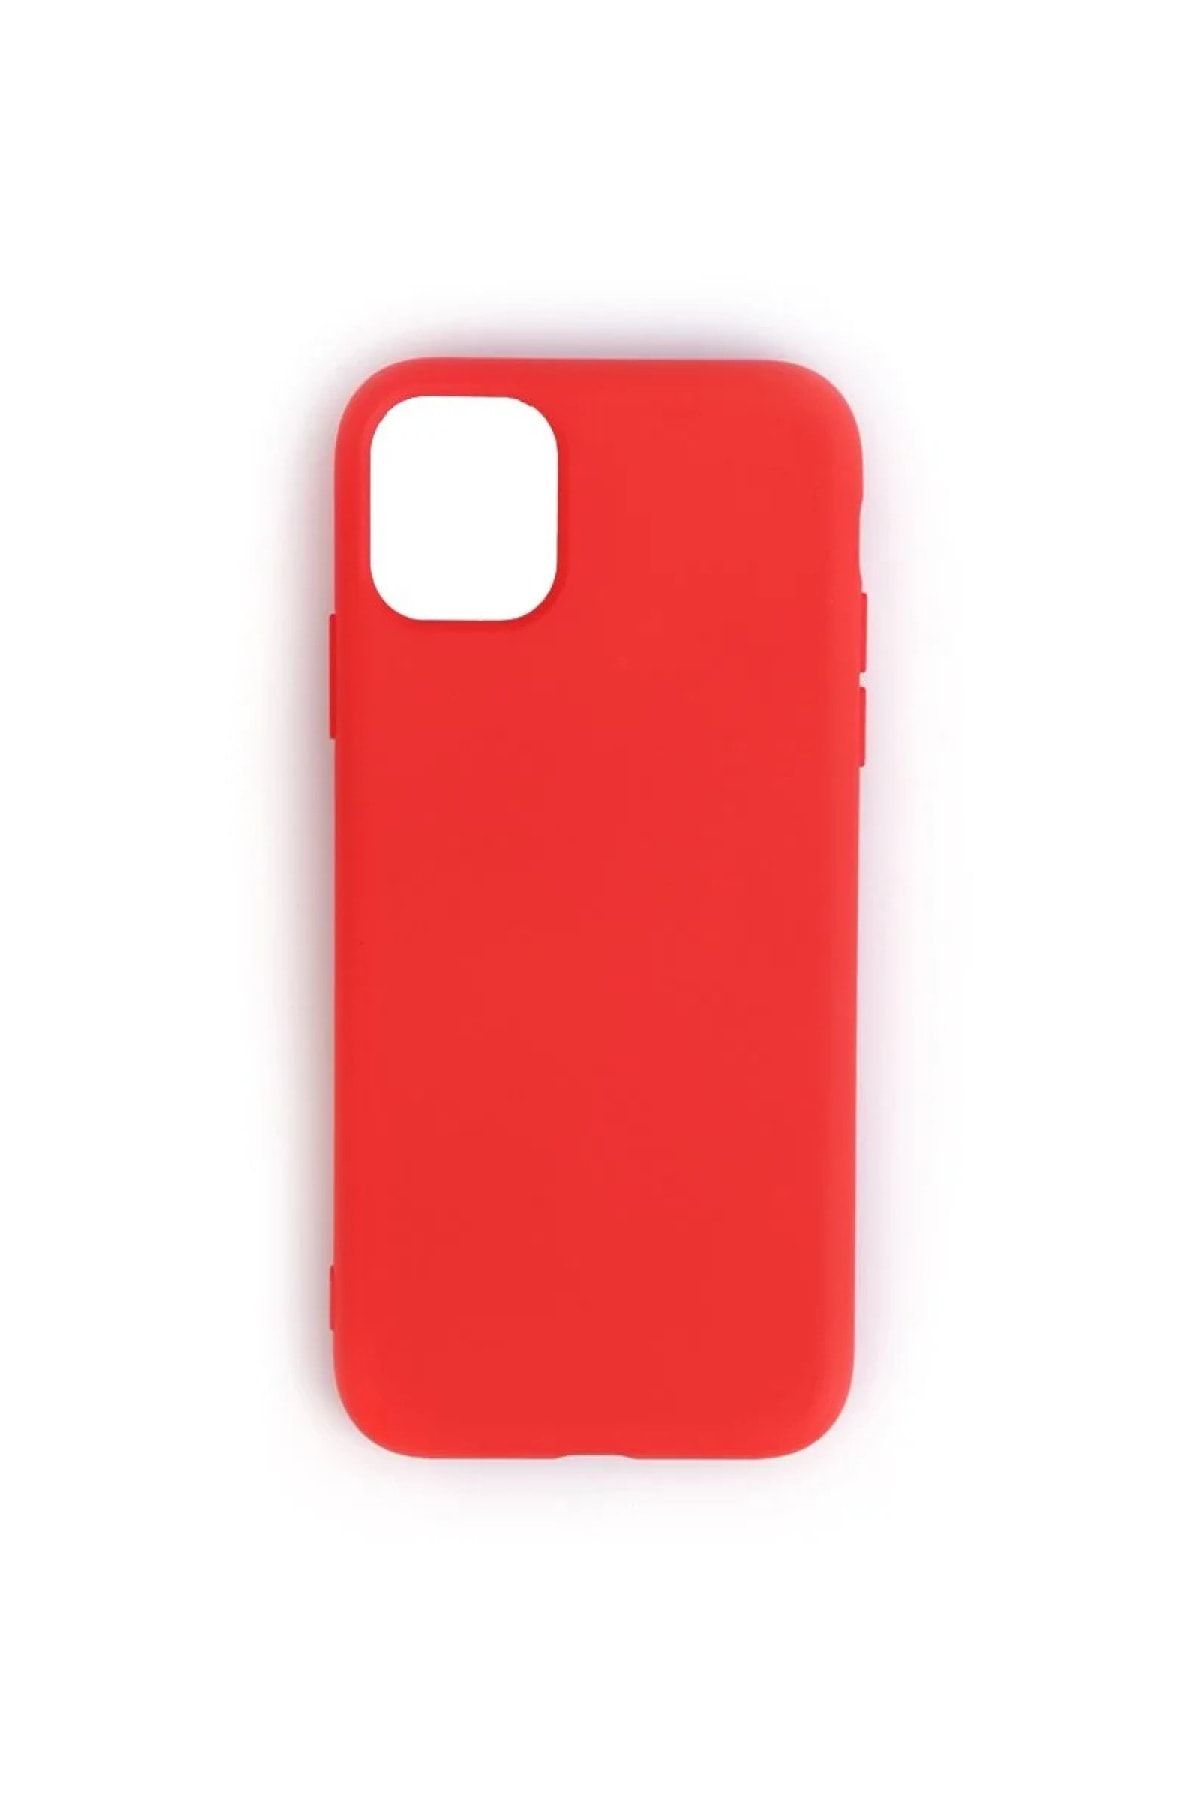 Mopal Iphone 11 Cappy Silikon Kılıf Kırmızı